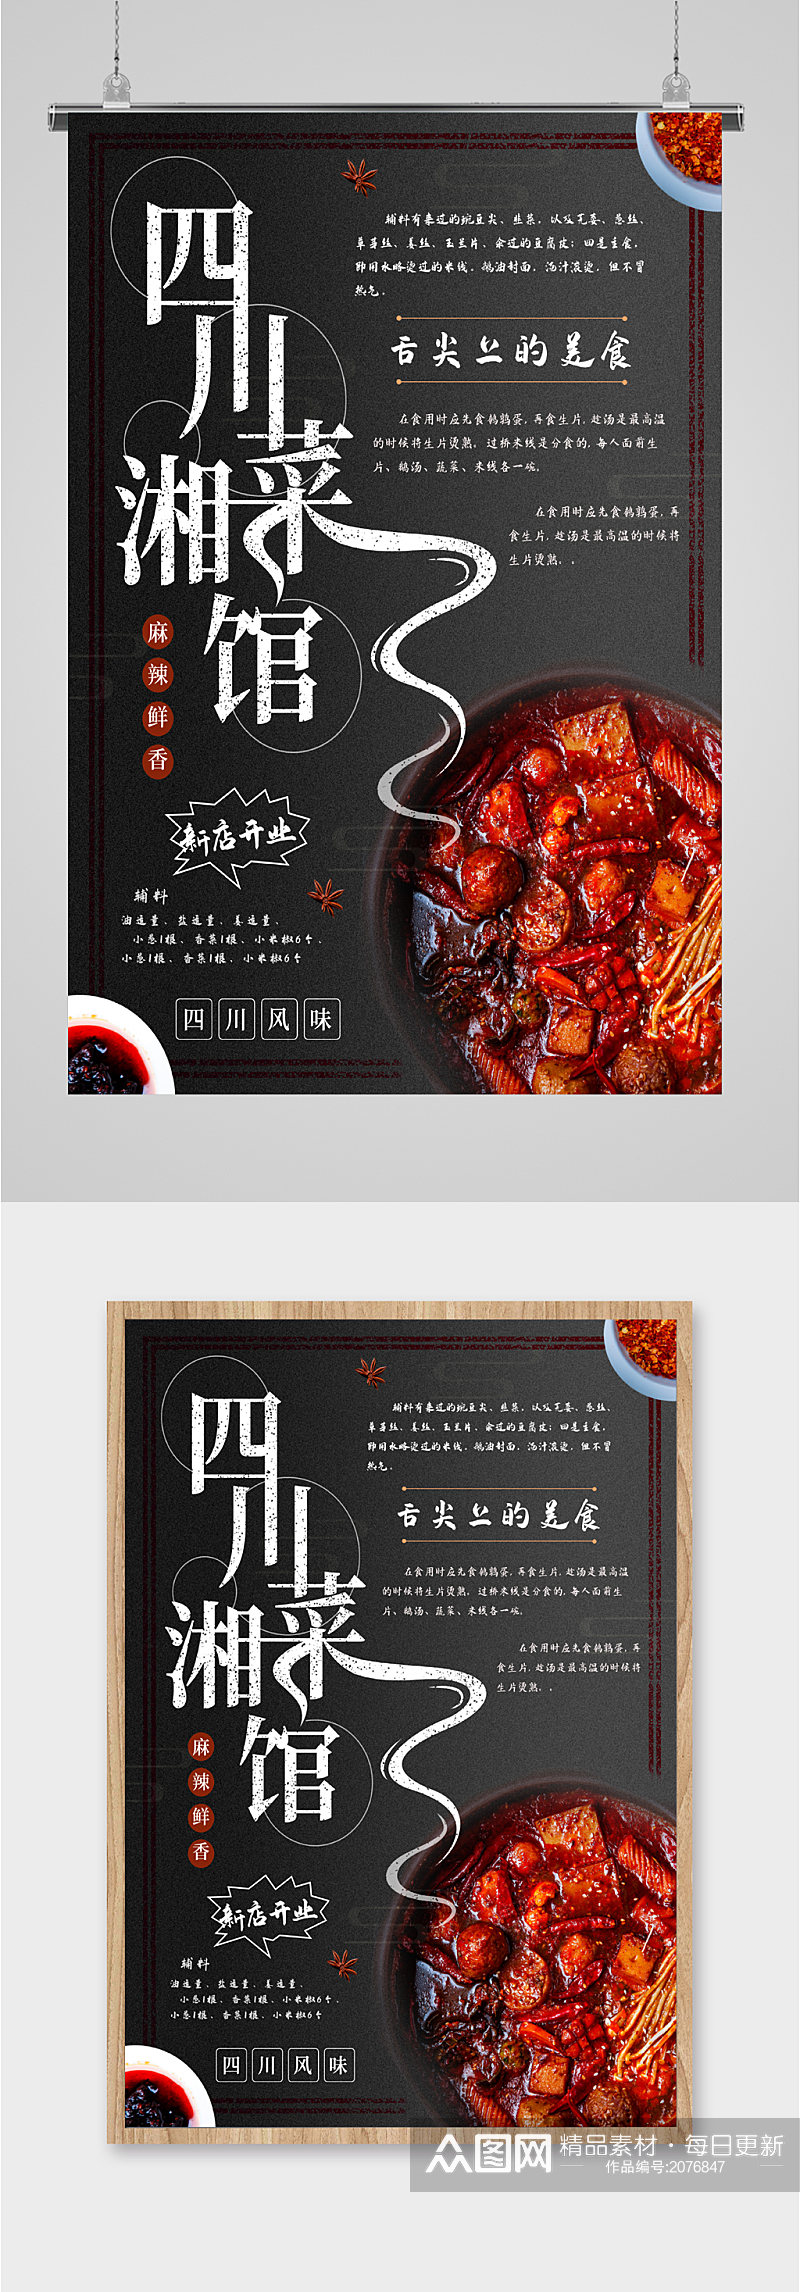 四川湘菜馆美味新店开业促销海报素材